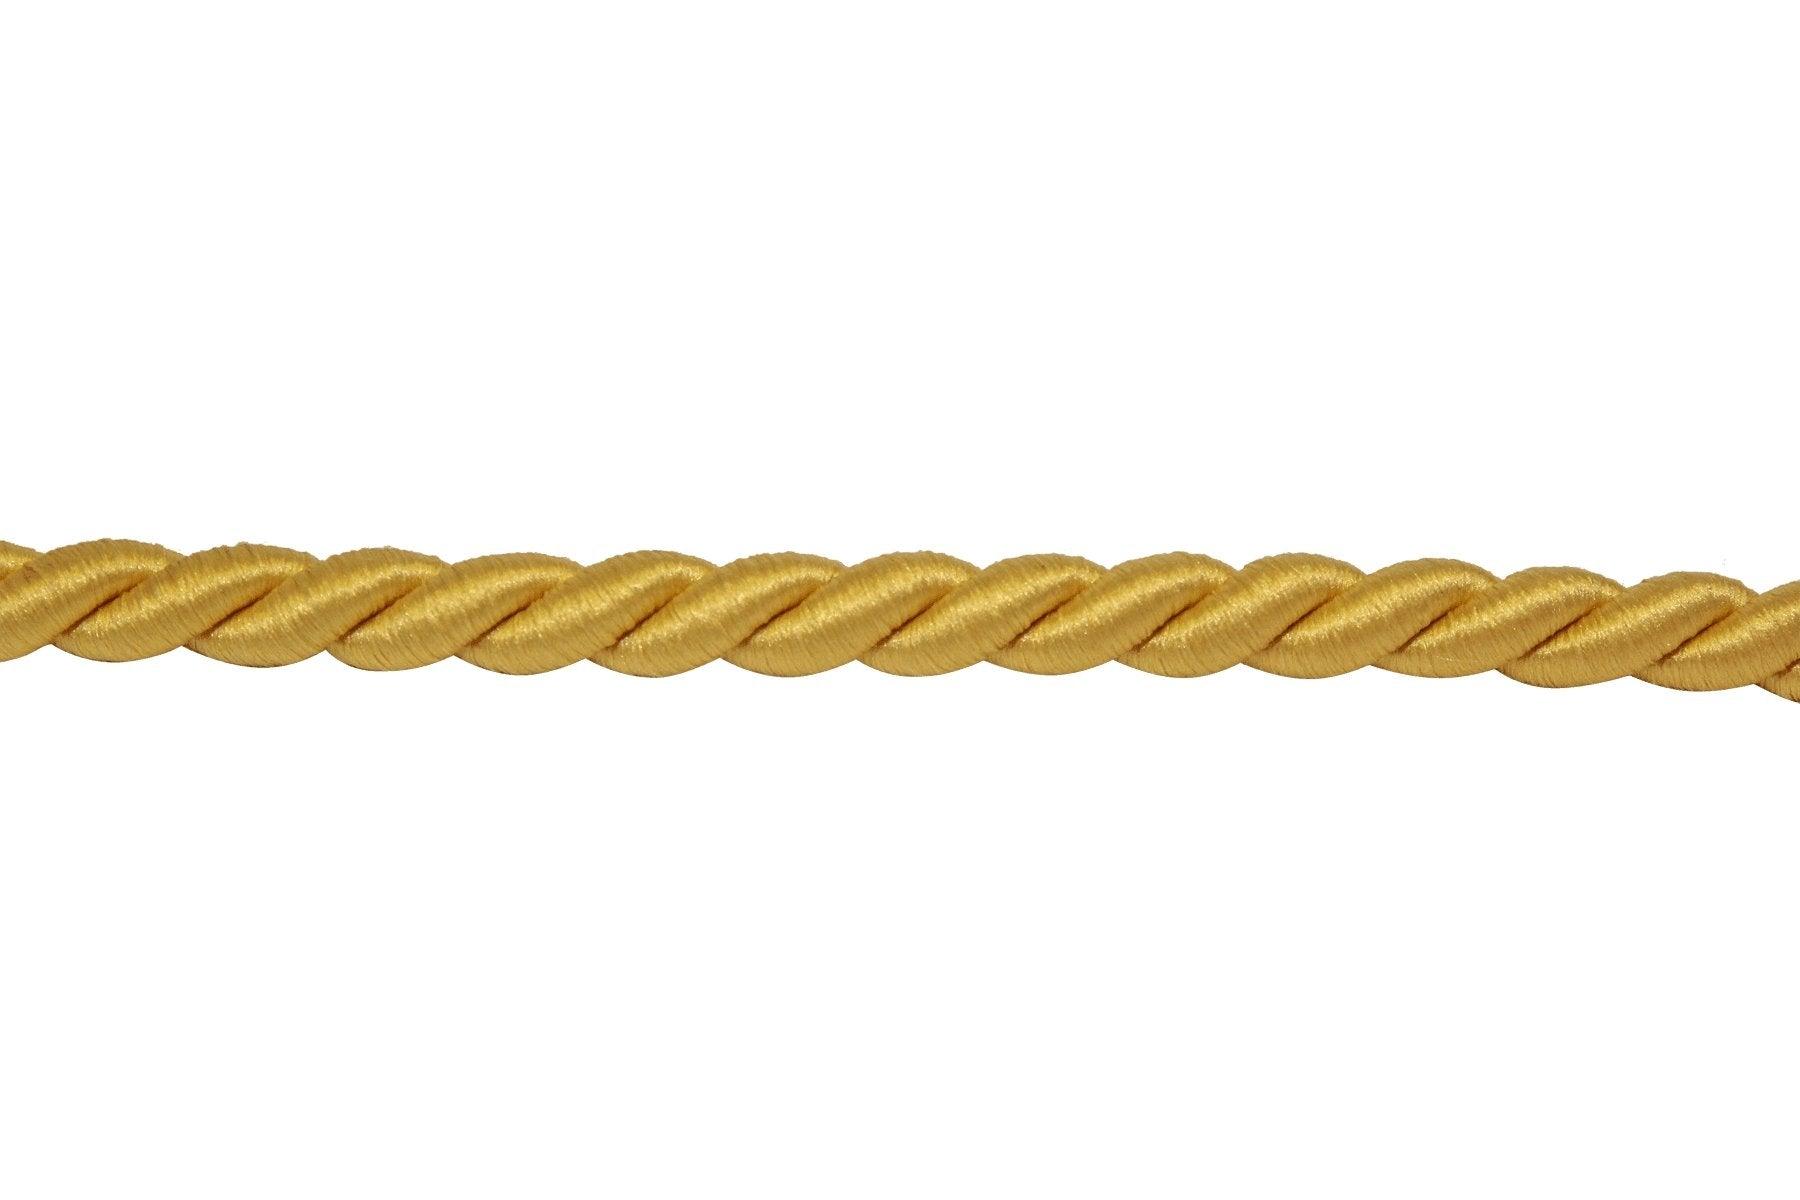 Braid - Rope - Matuska Taxidermy Supply Company